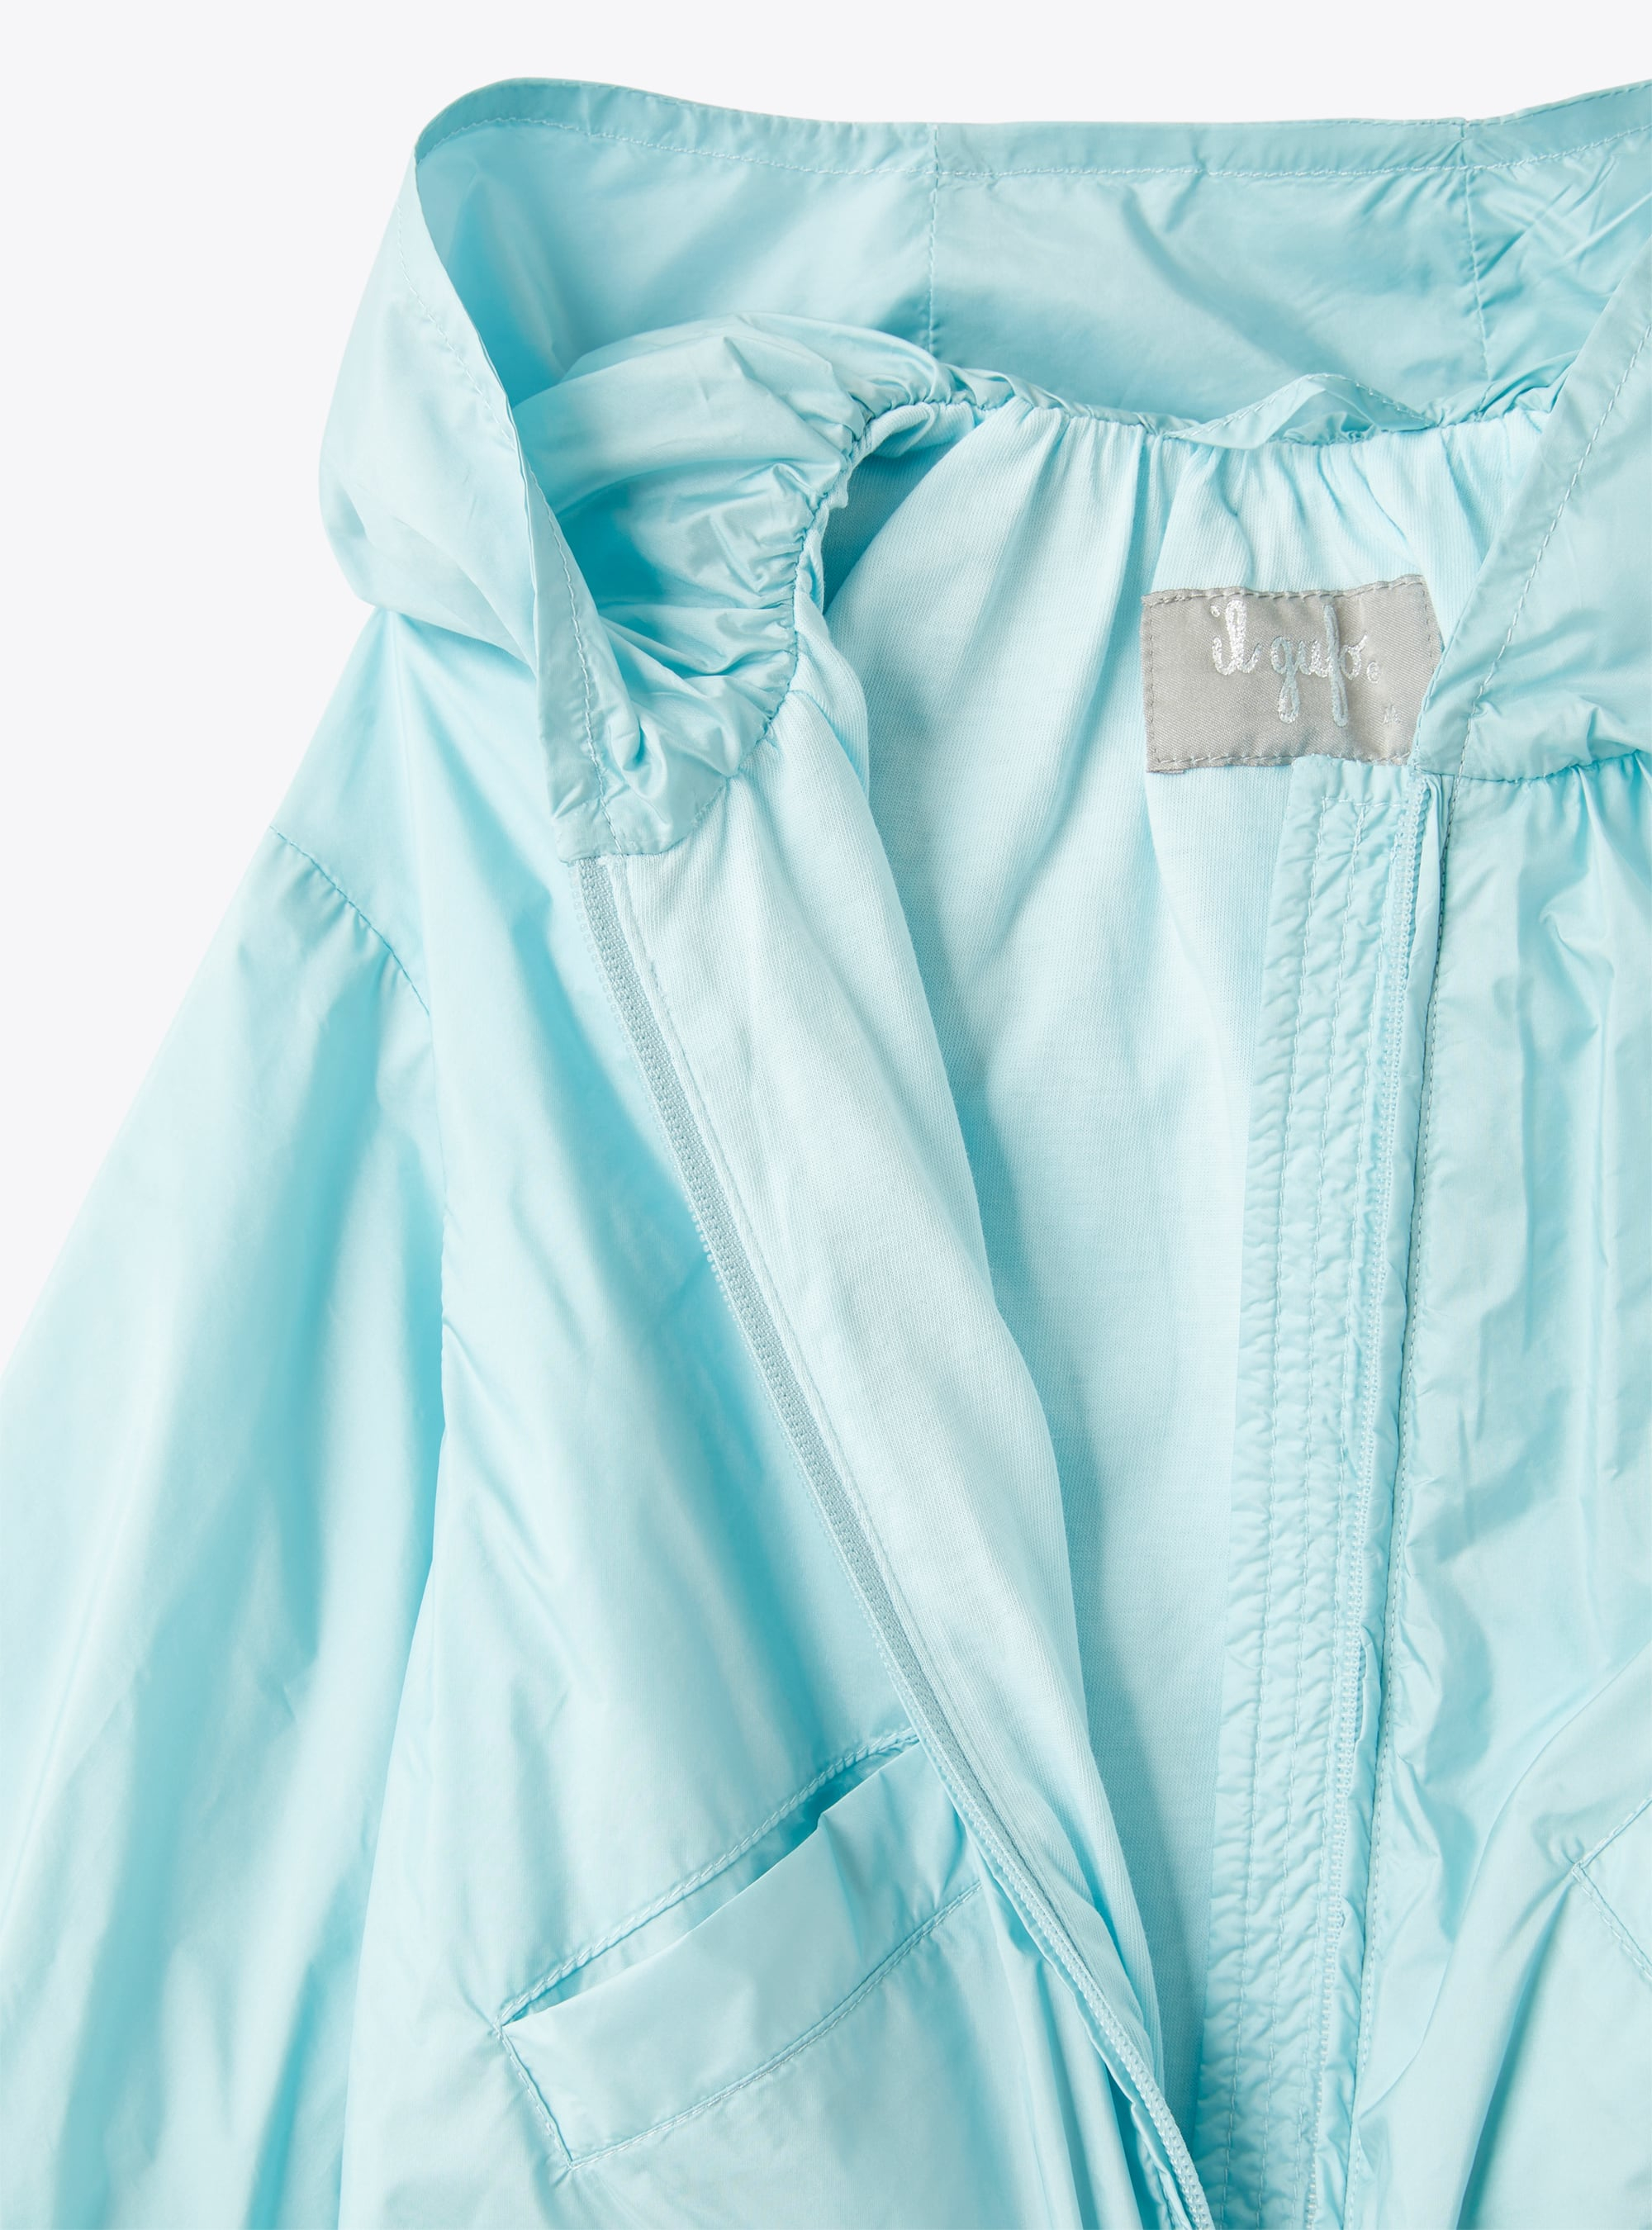 Giacca con cappuccio in nylon downproof color acqua - Marrone | Il Gufo